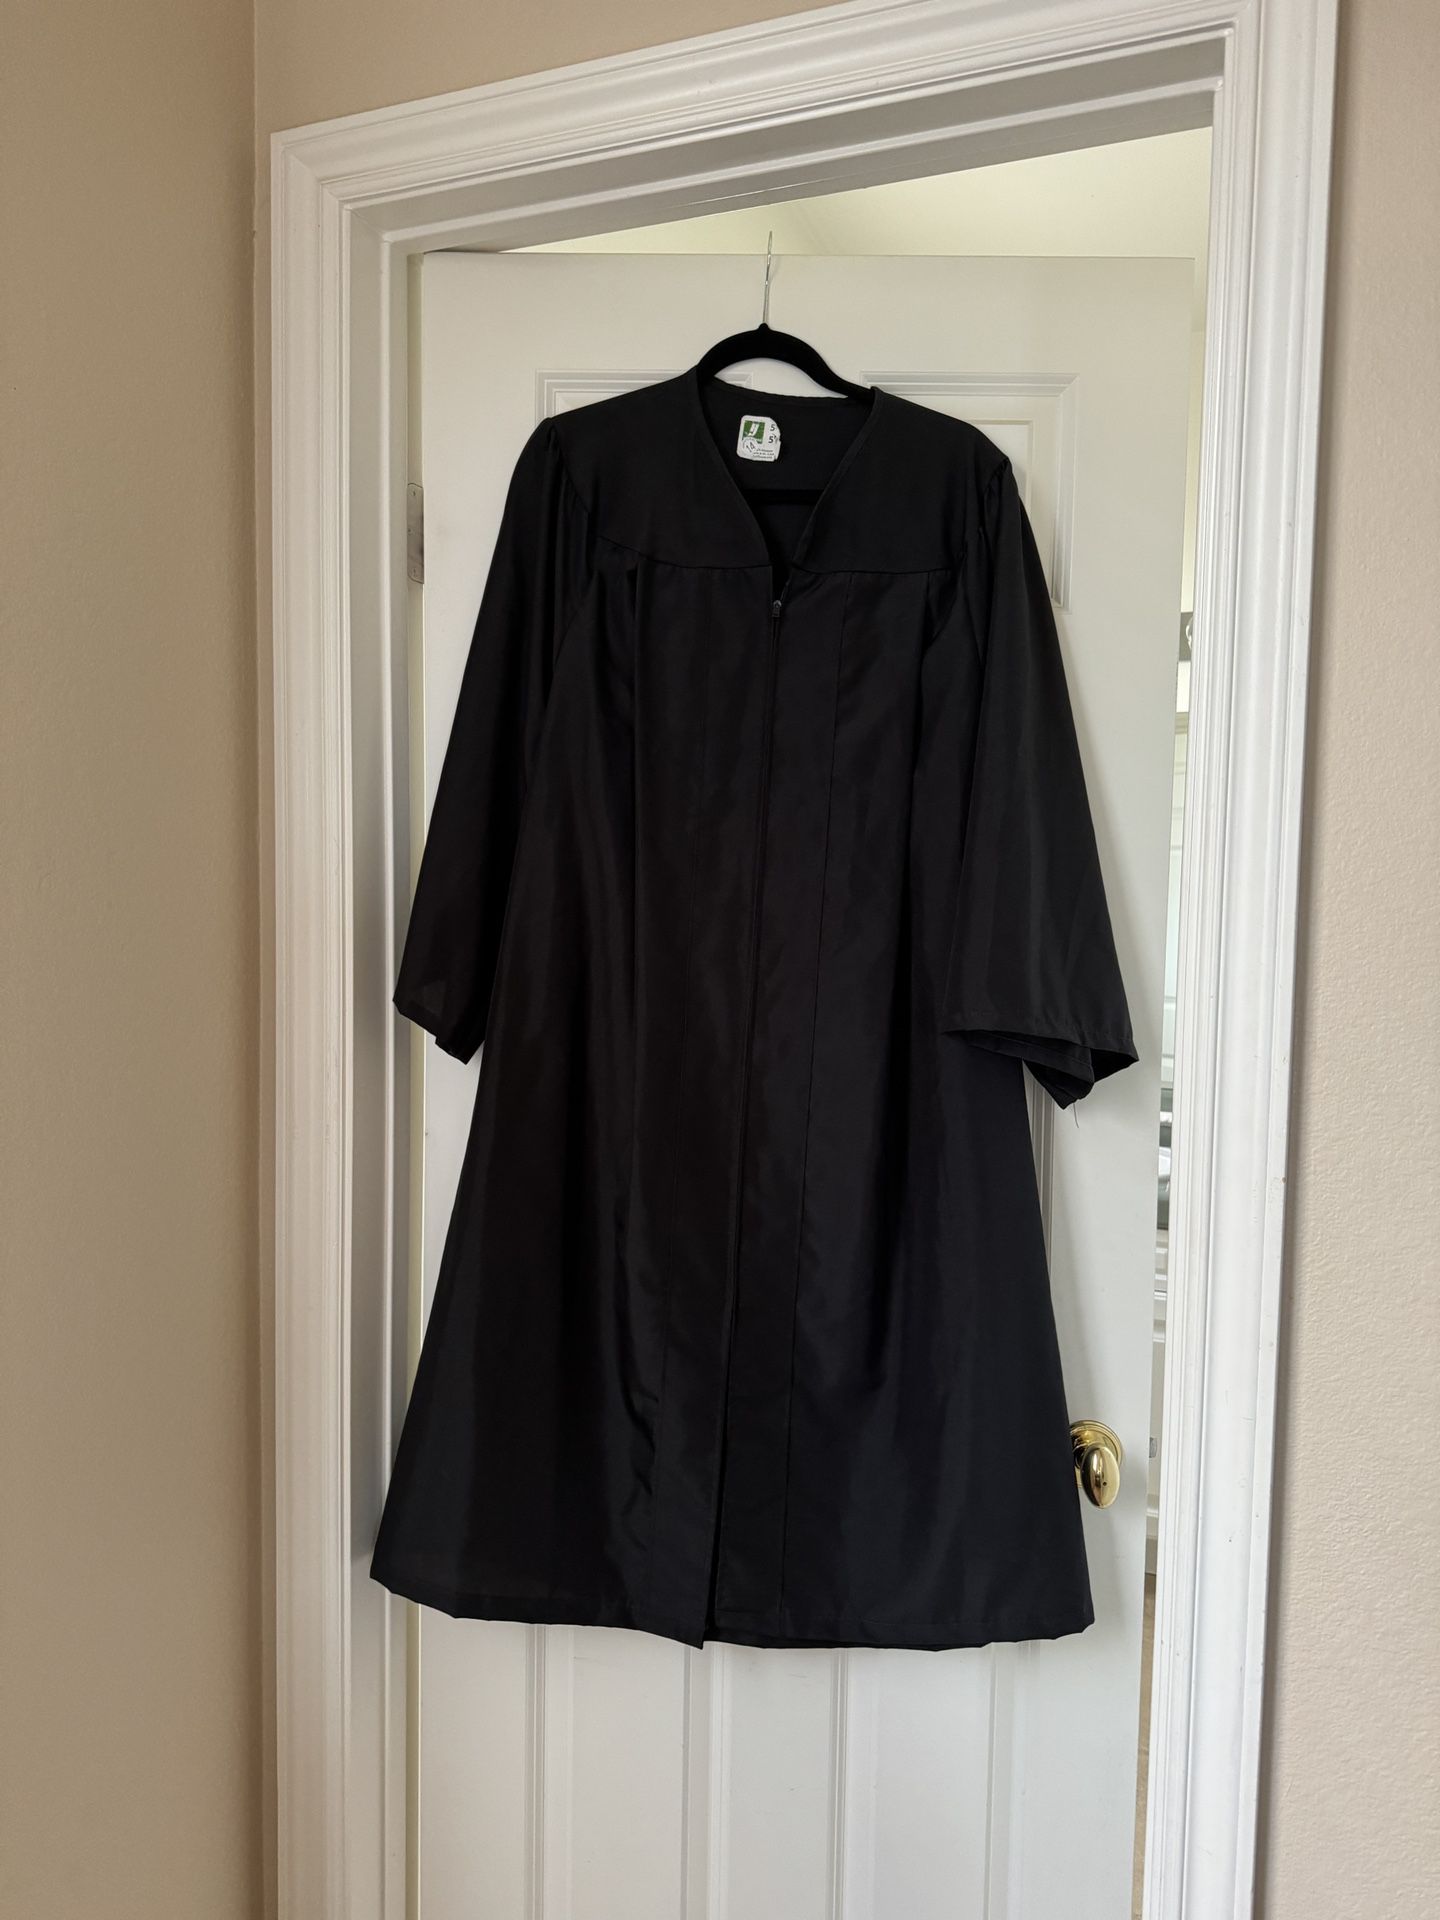 Graduation Gown - Black Size 5’2”- 5’4”